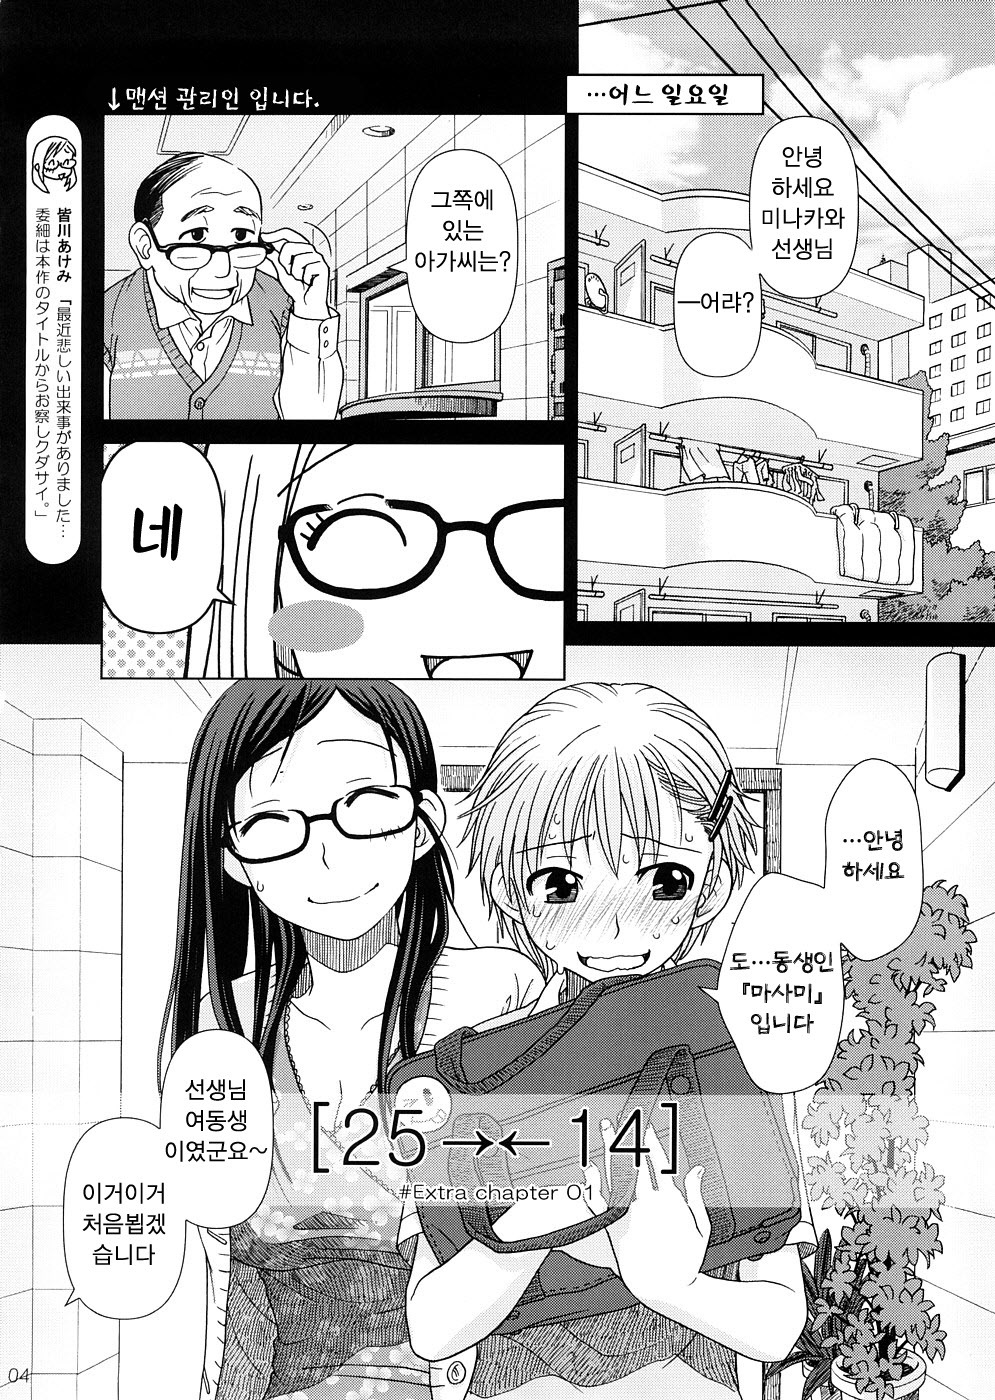 (COMIC1☆2) [Otaku Beam (Ootsuka Mahiro)] 2514 [24→←14] #Extra chapter [Korean] [팀 면갤] page 3 full